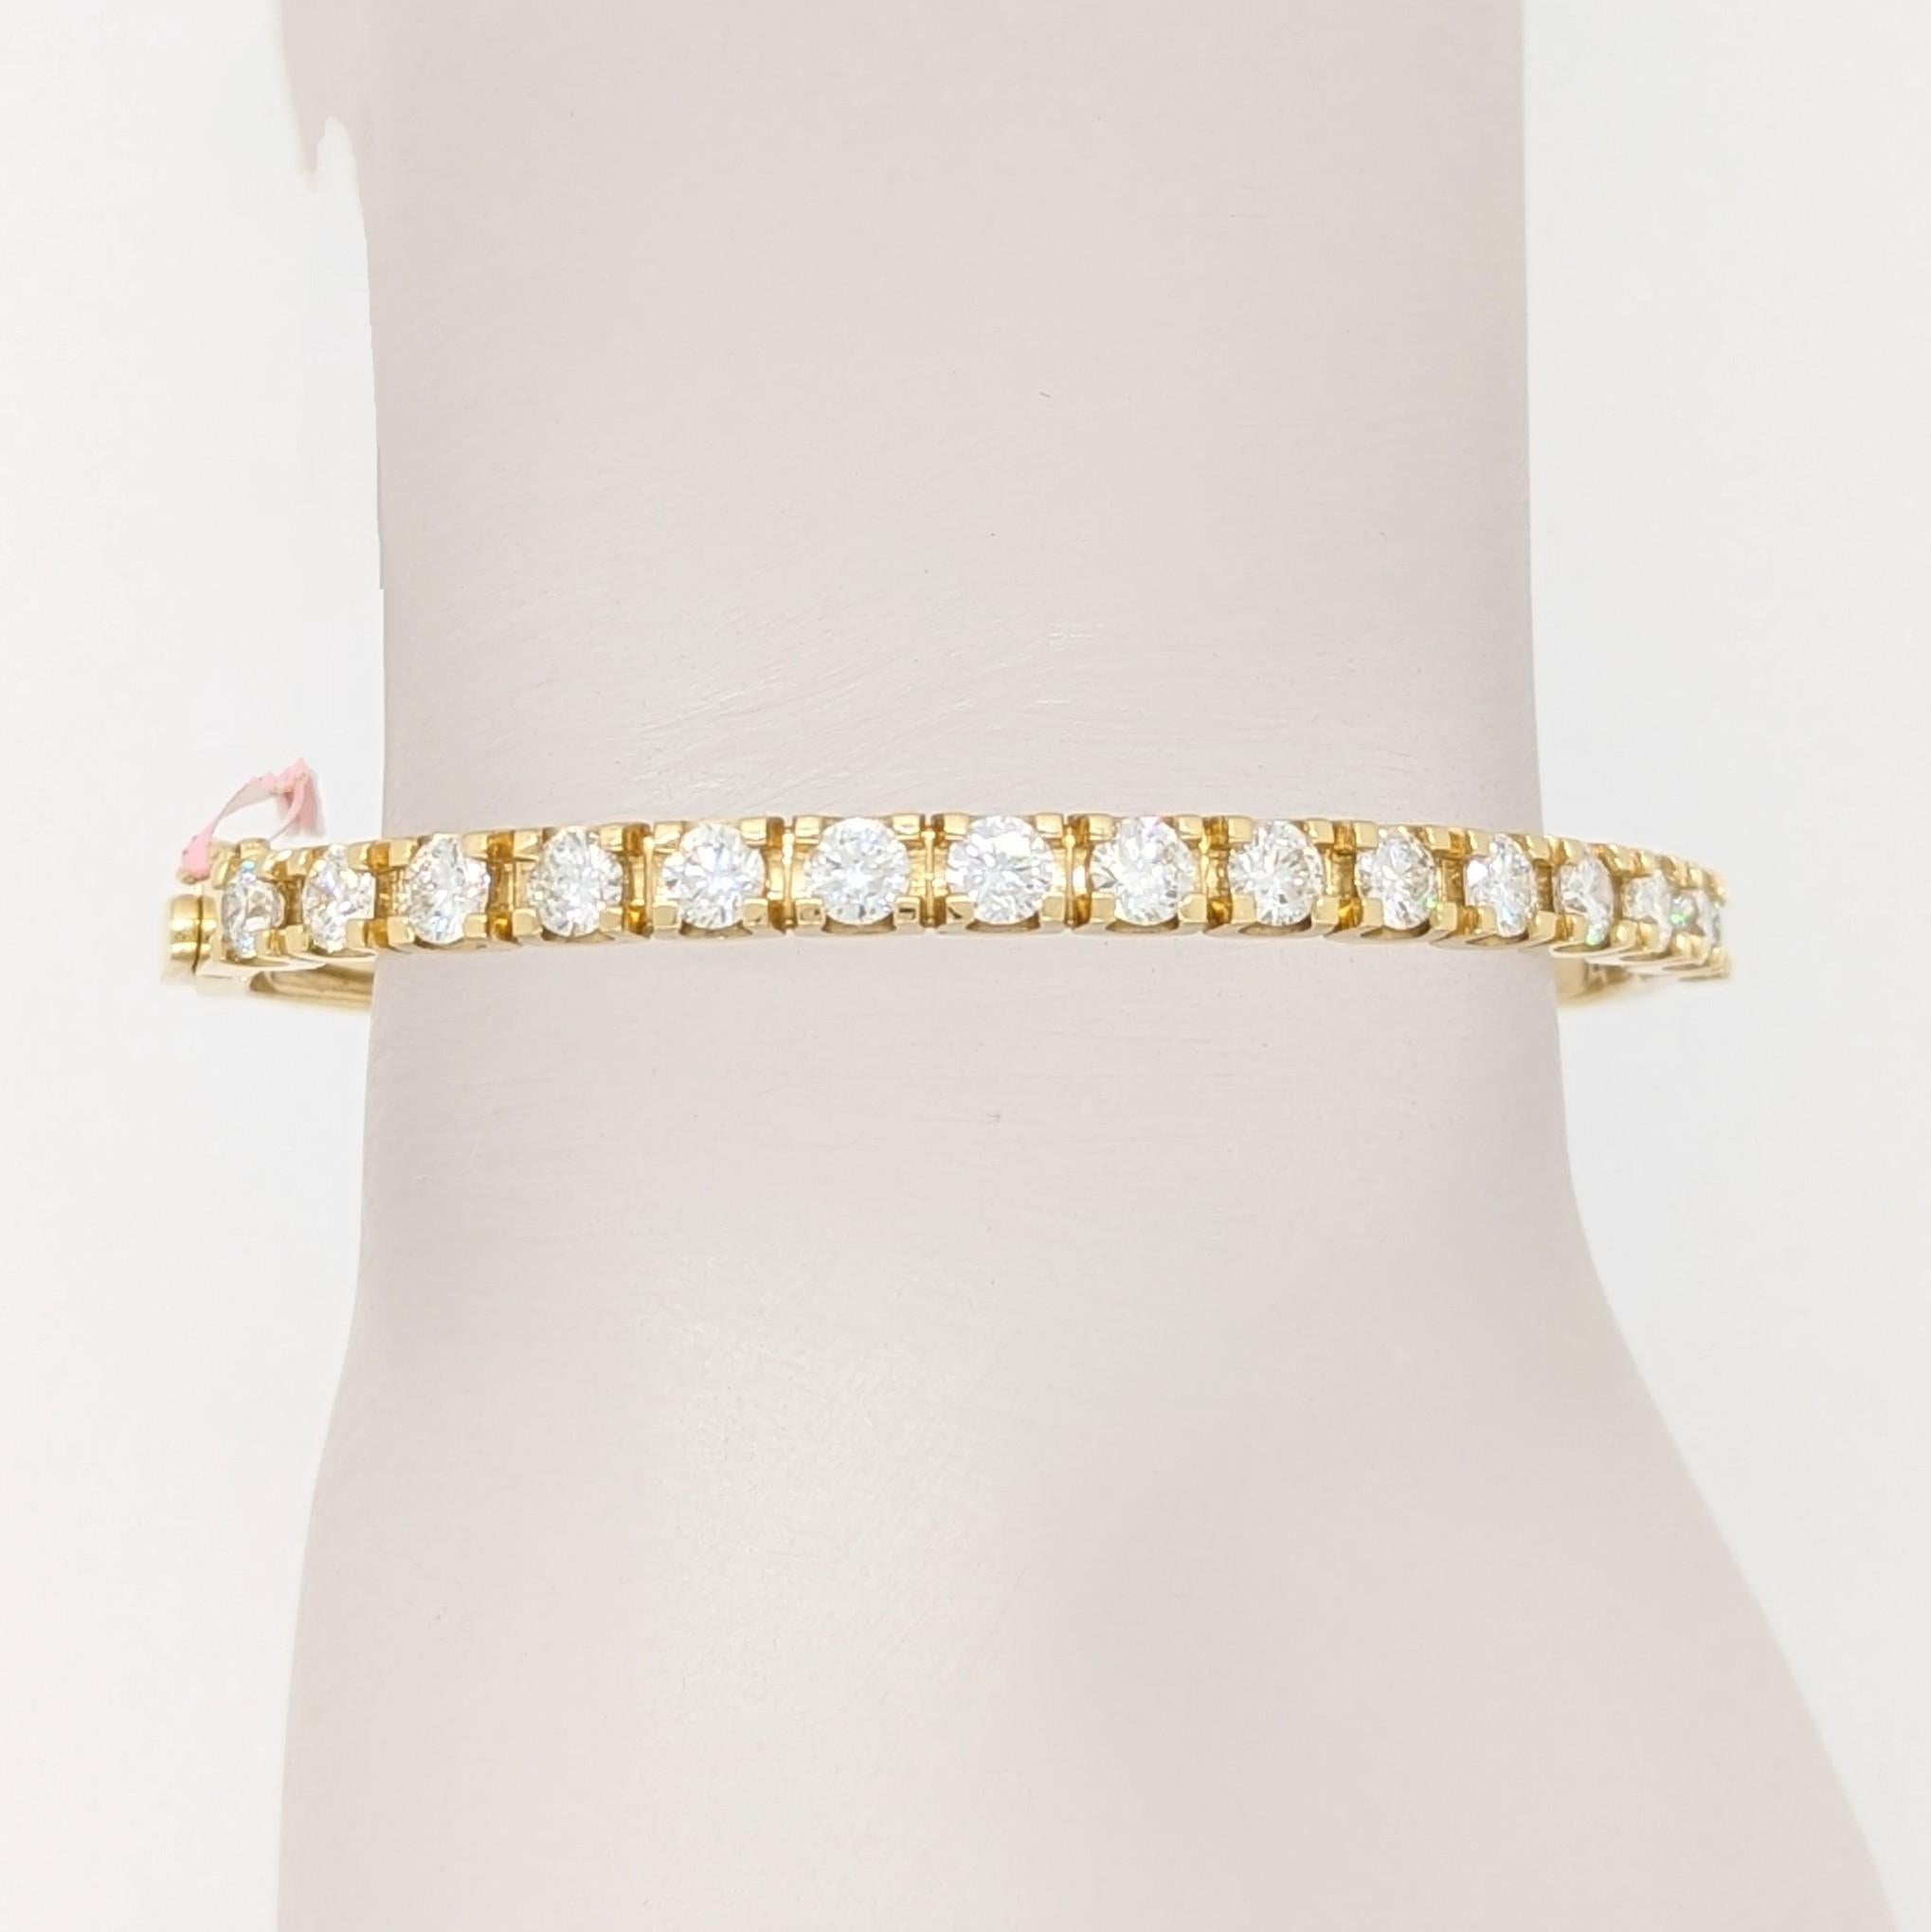 Magnifiques diamants blancs ronds de 3,00 ct. dans ce bracelet en or jaune 14k fait à la main.  Un total de 15 pierres.  Un excellent complément à toute collection de bijoux fins.